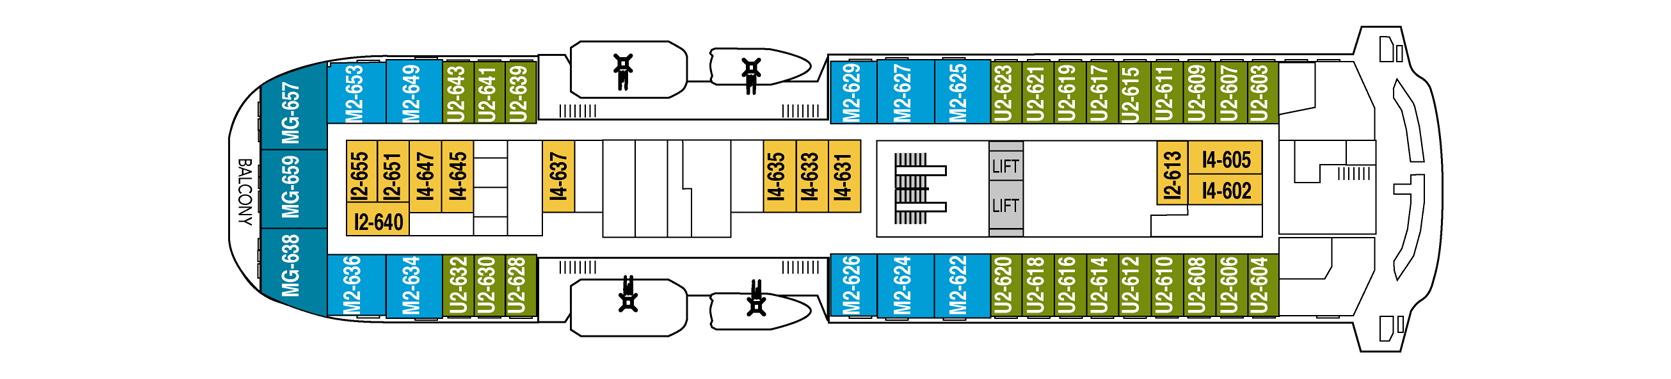 ship's scheme 21